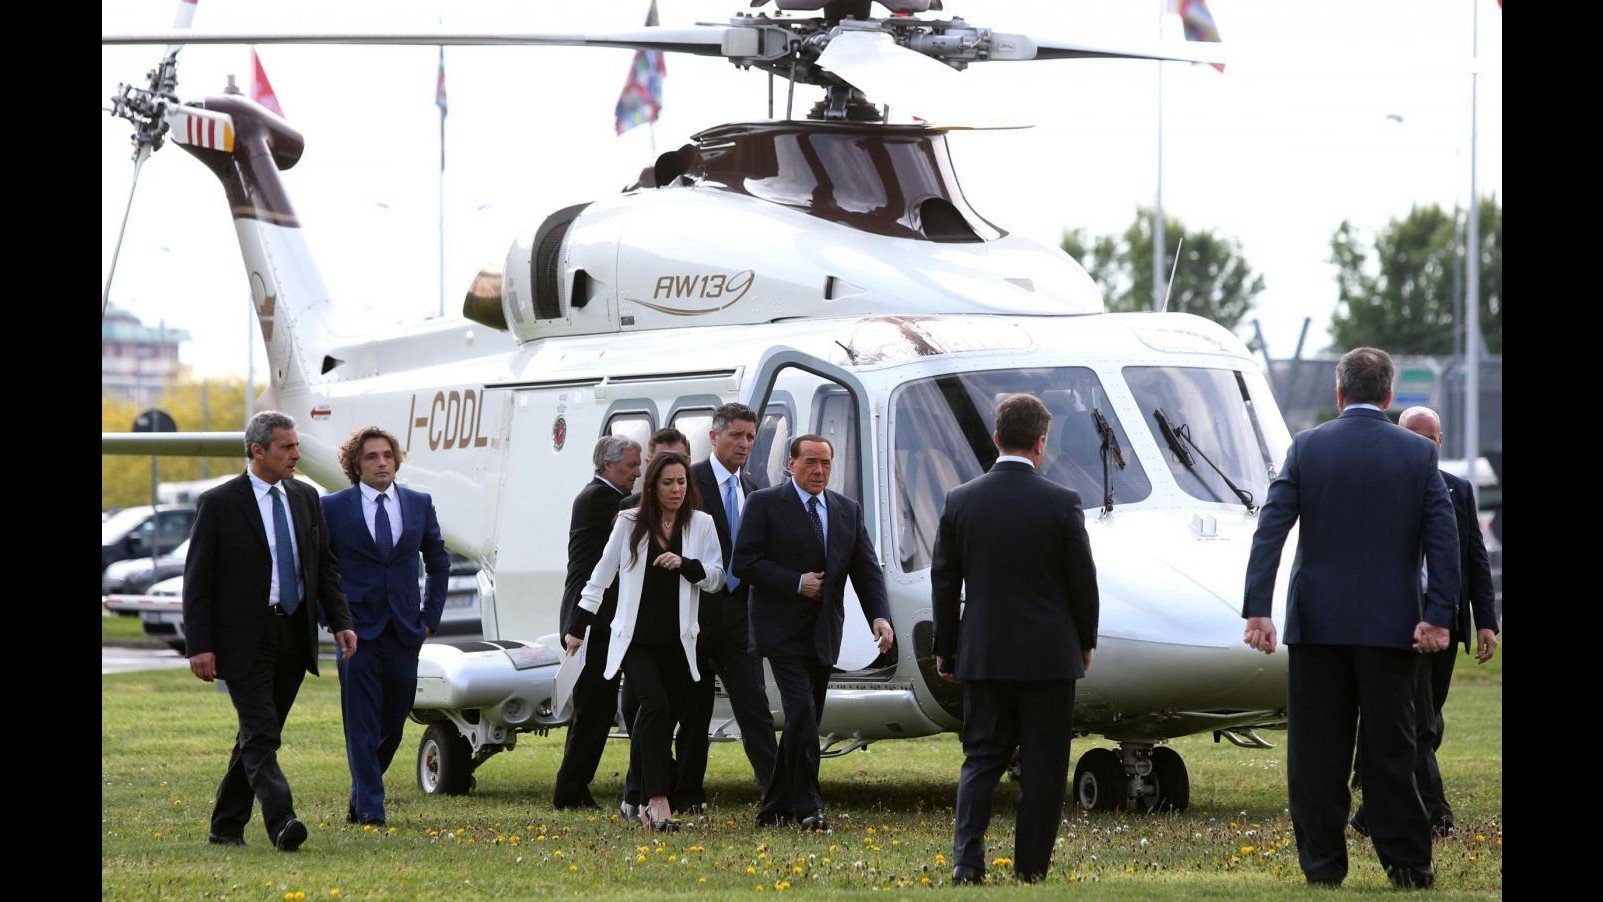 FOTO Silvio Berlusconi arriva in elicottero al Salone del Mobile di Milano